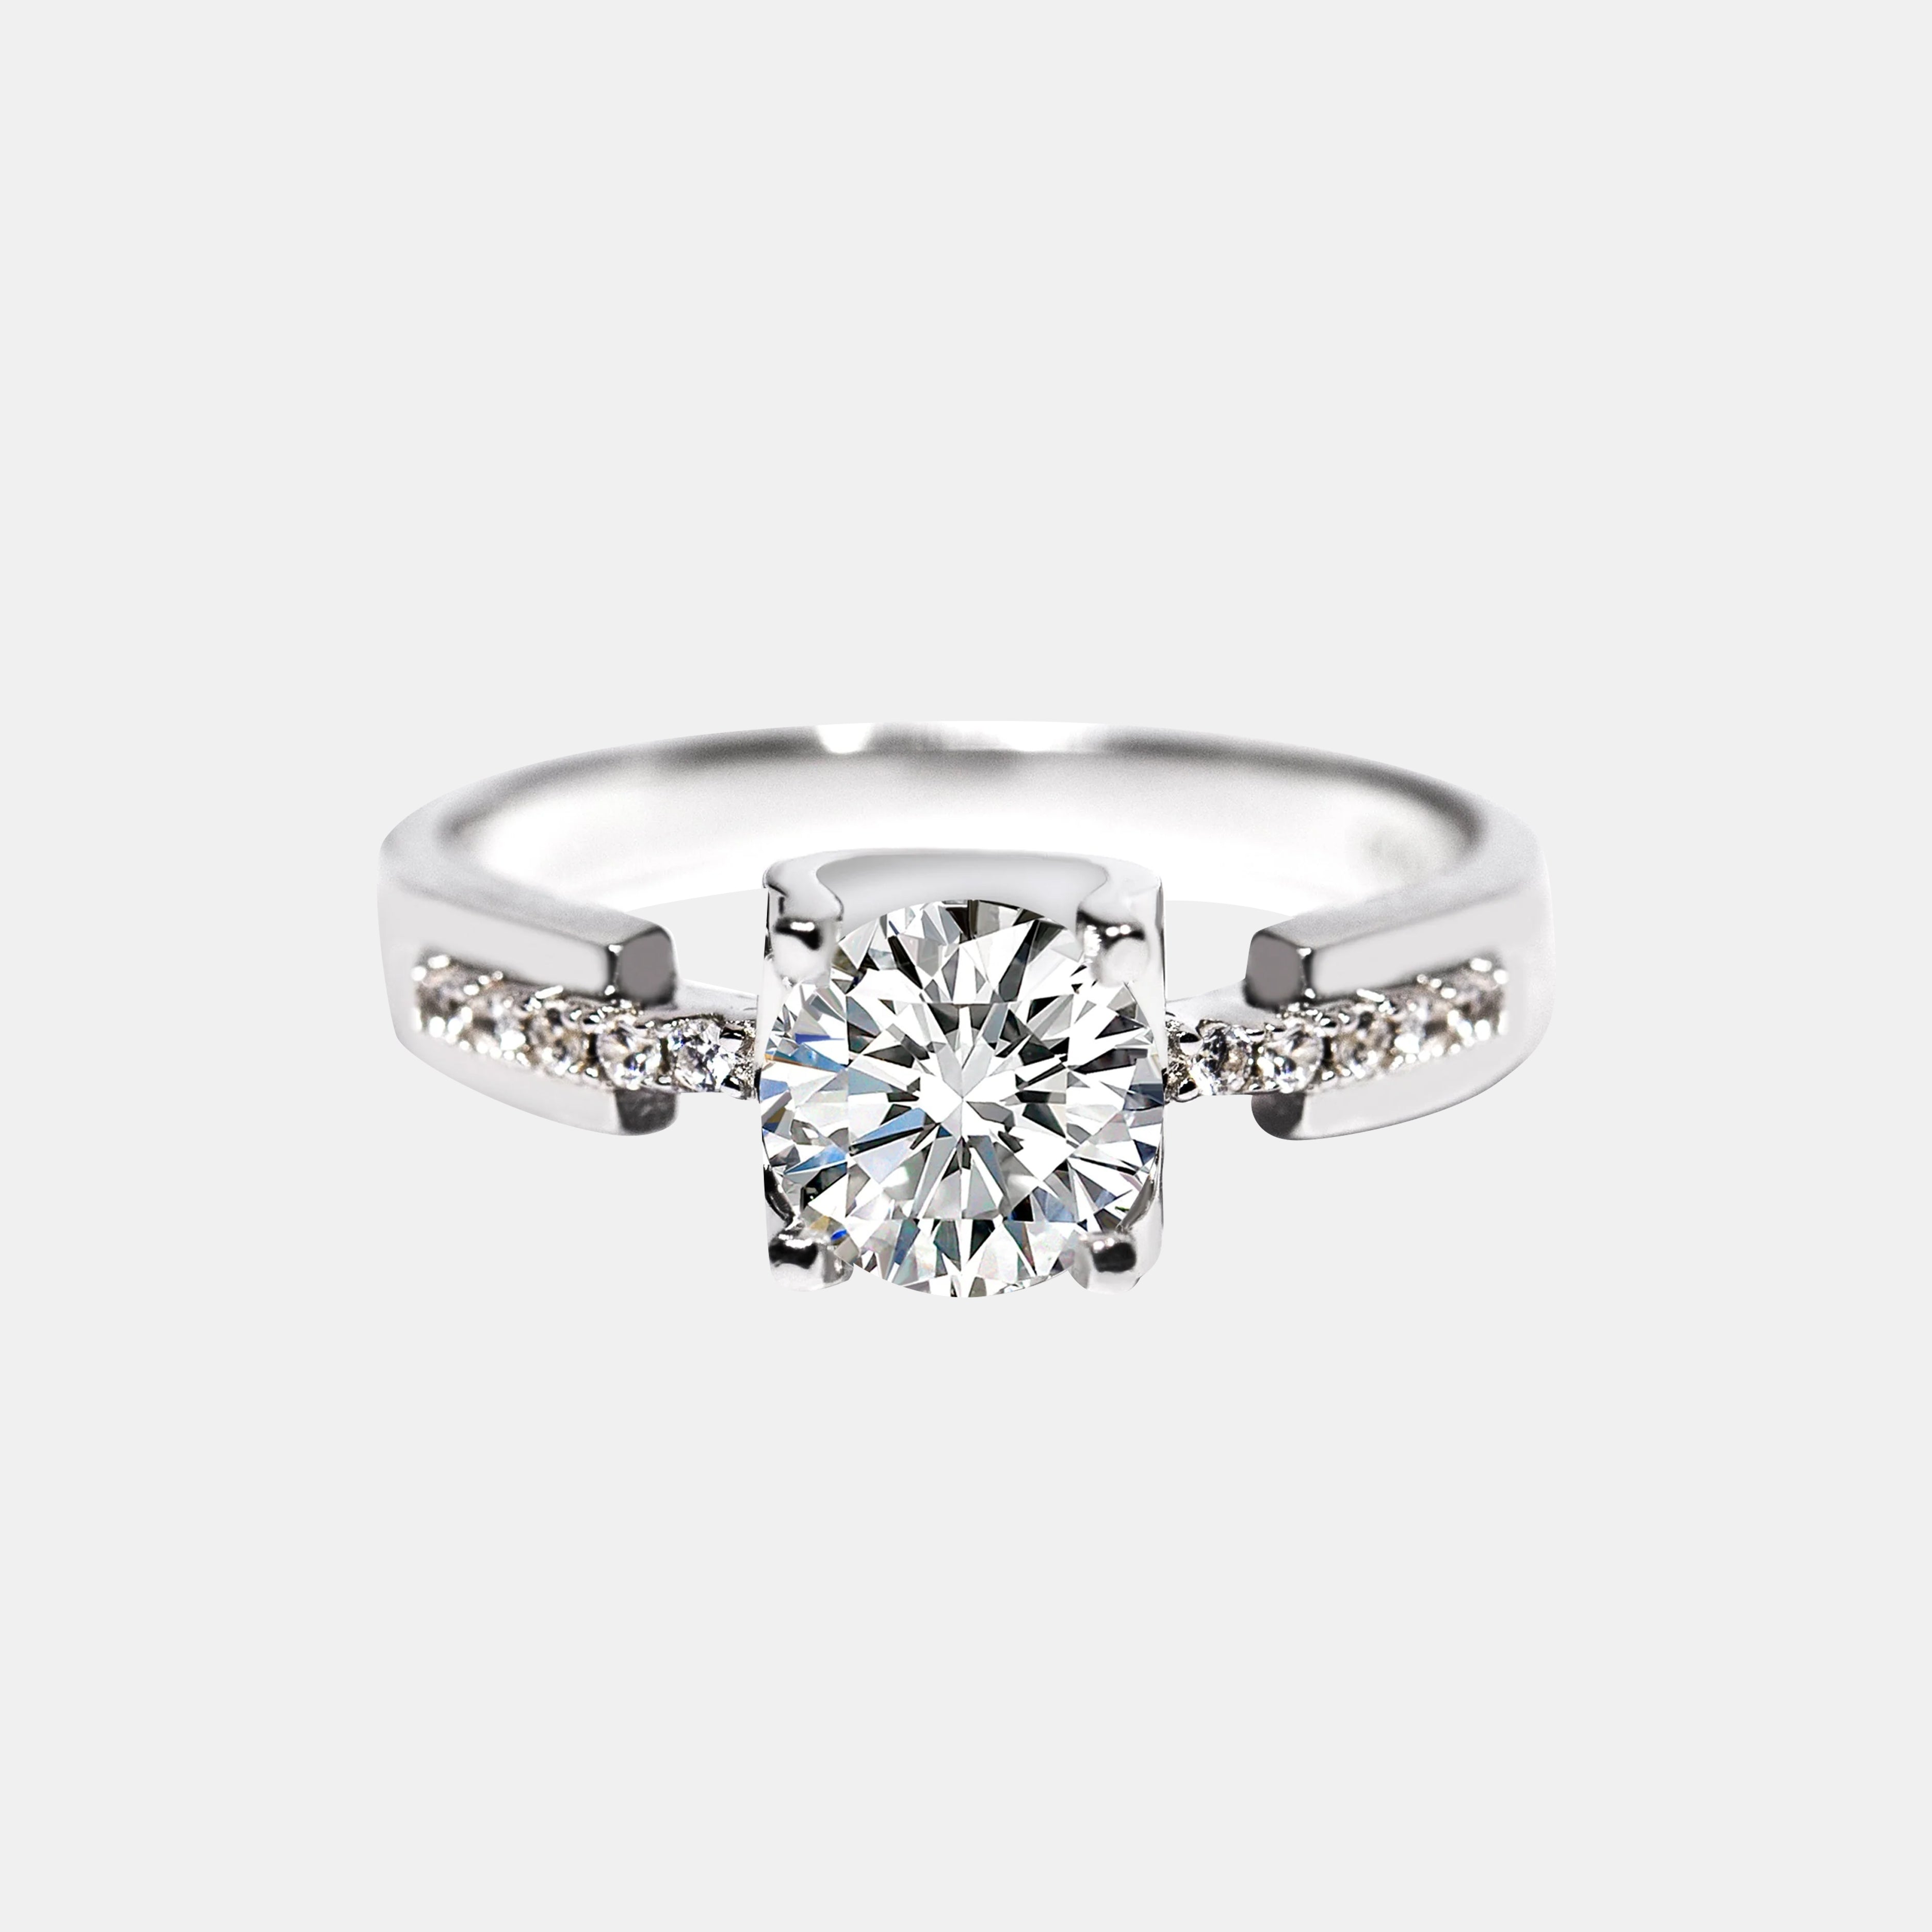 【#9】925 Sterling Silver Moissanite Ring